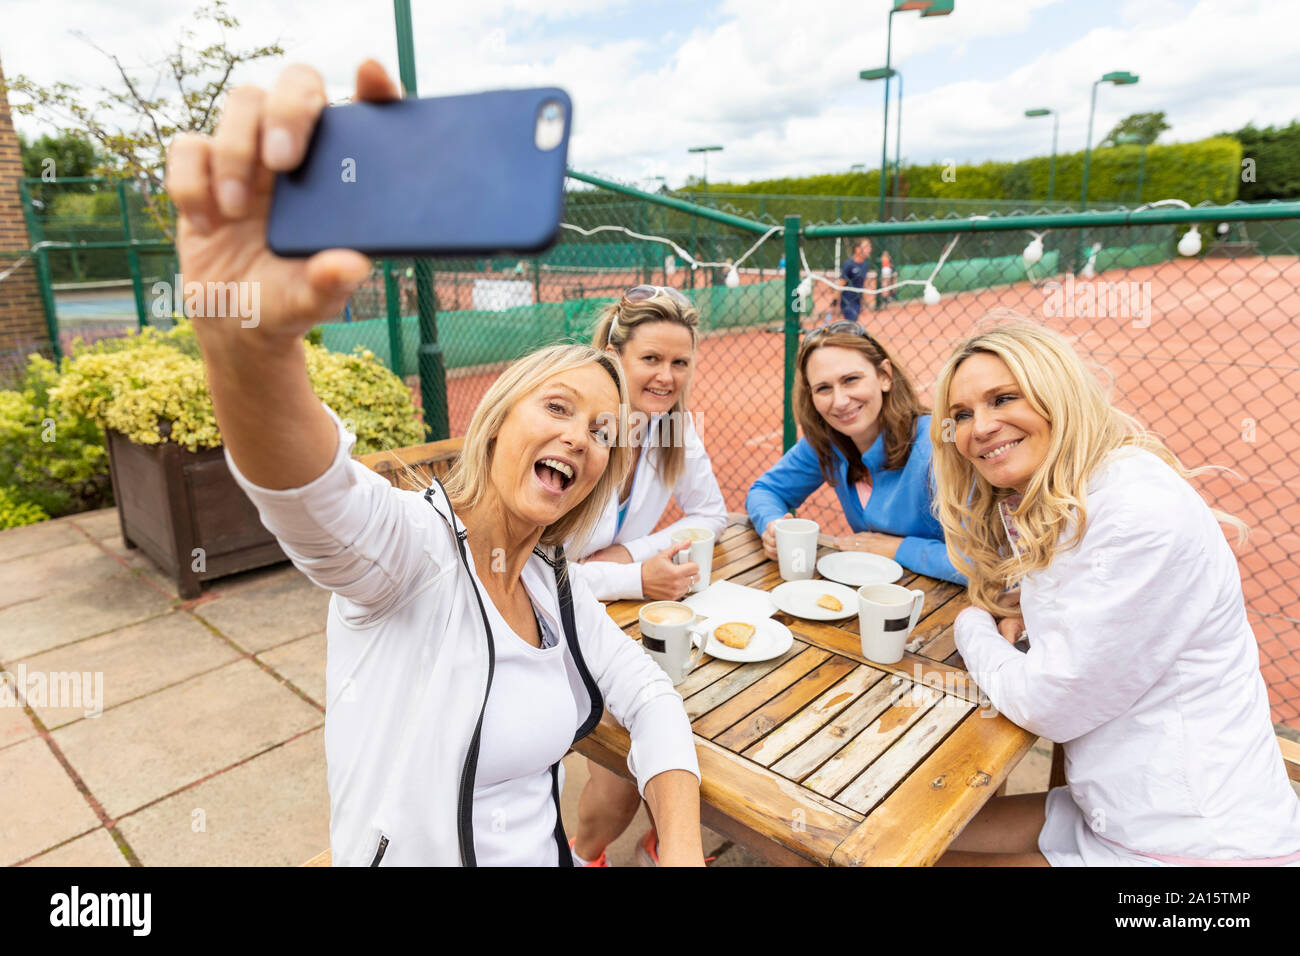 Gruppe von Frauen, die ein selfie am Tennis Club nach einem Spiel Stockfoto